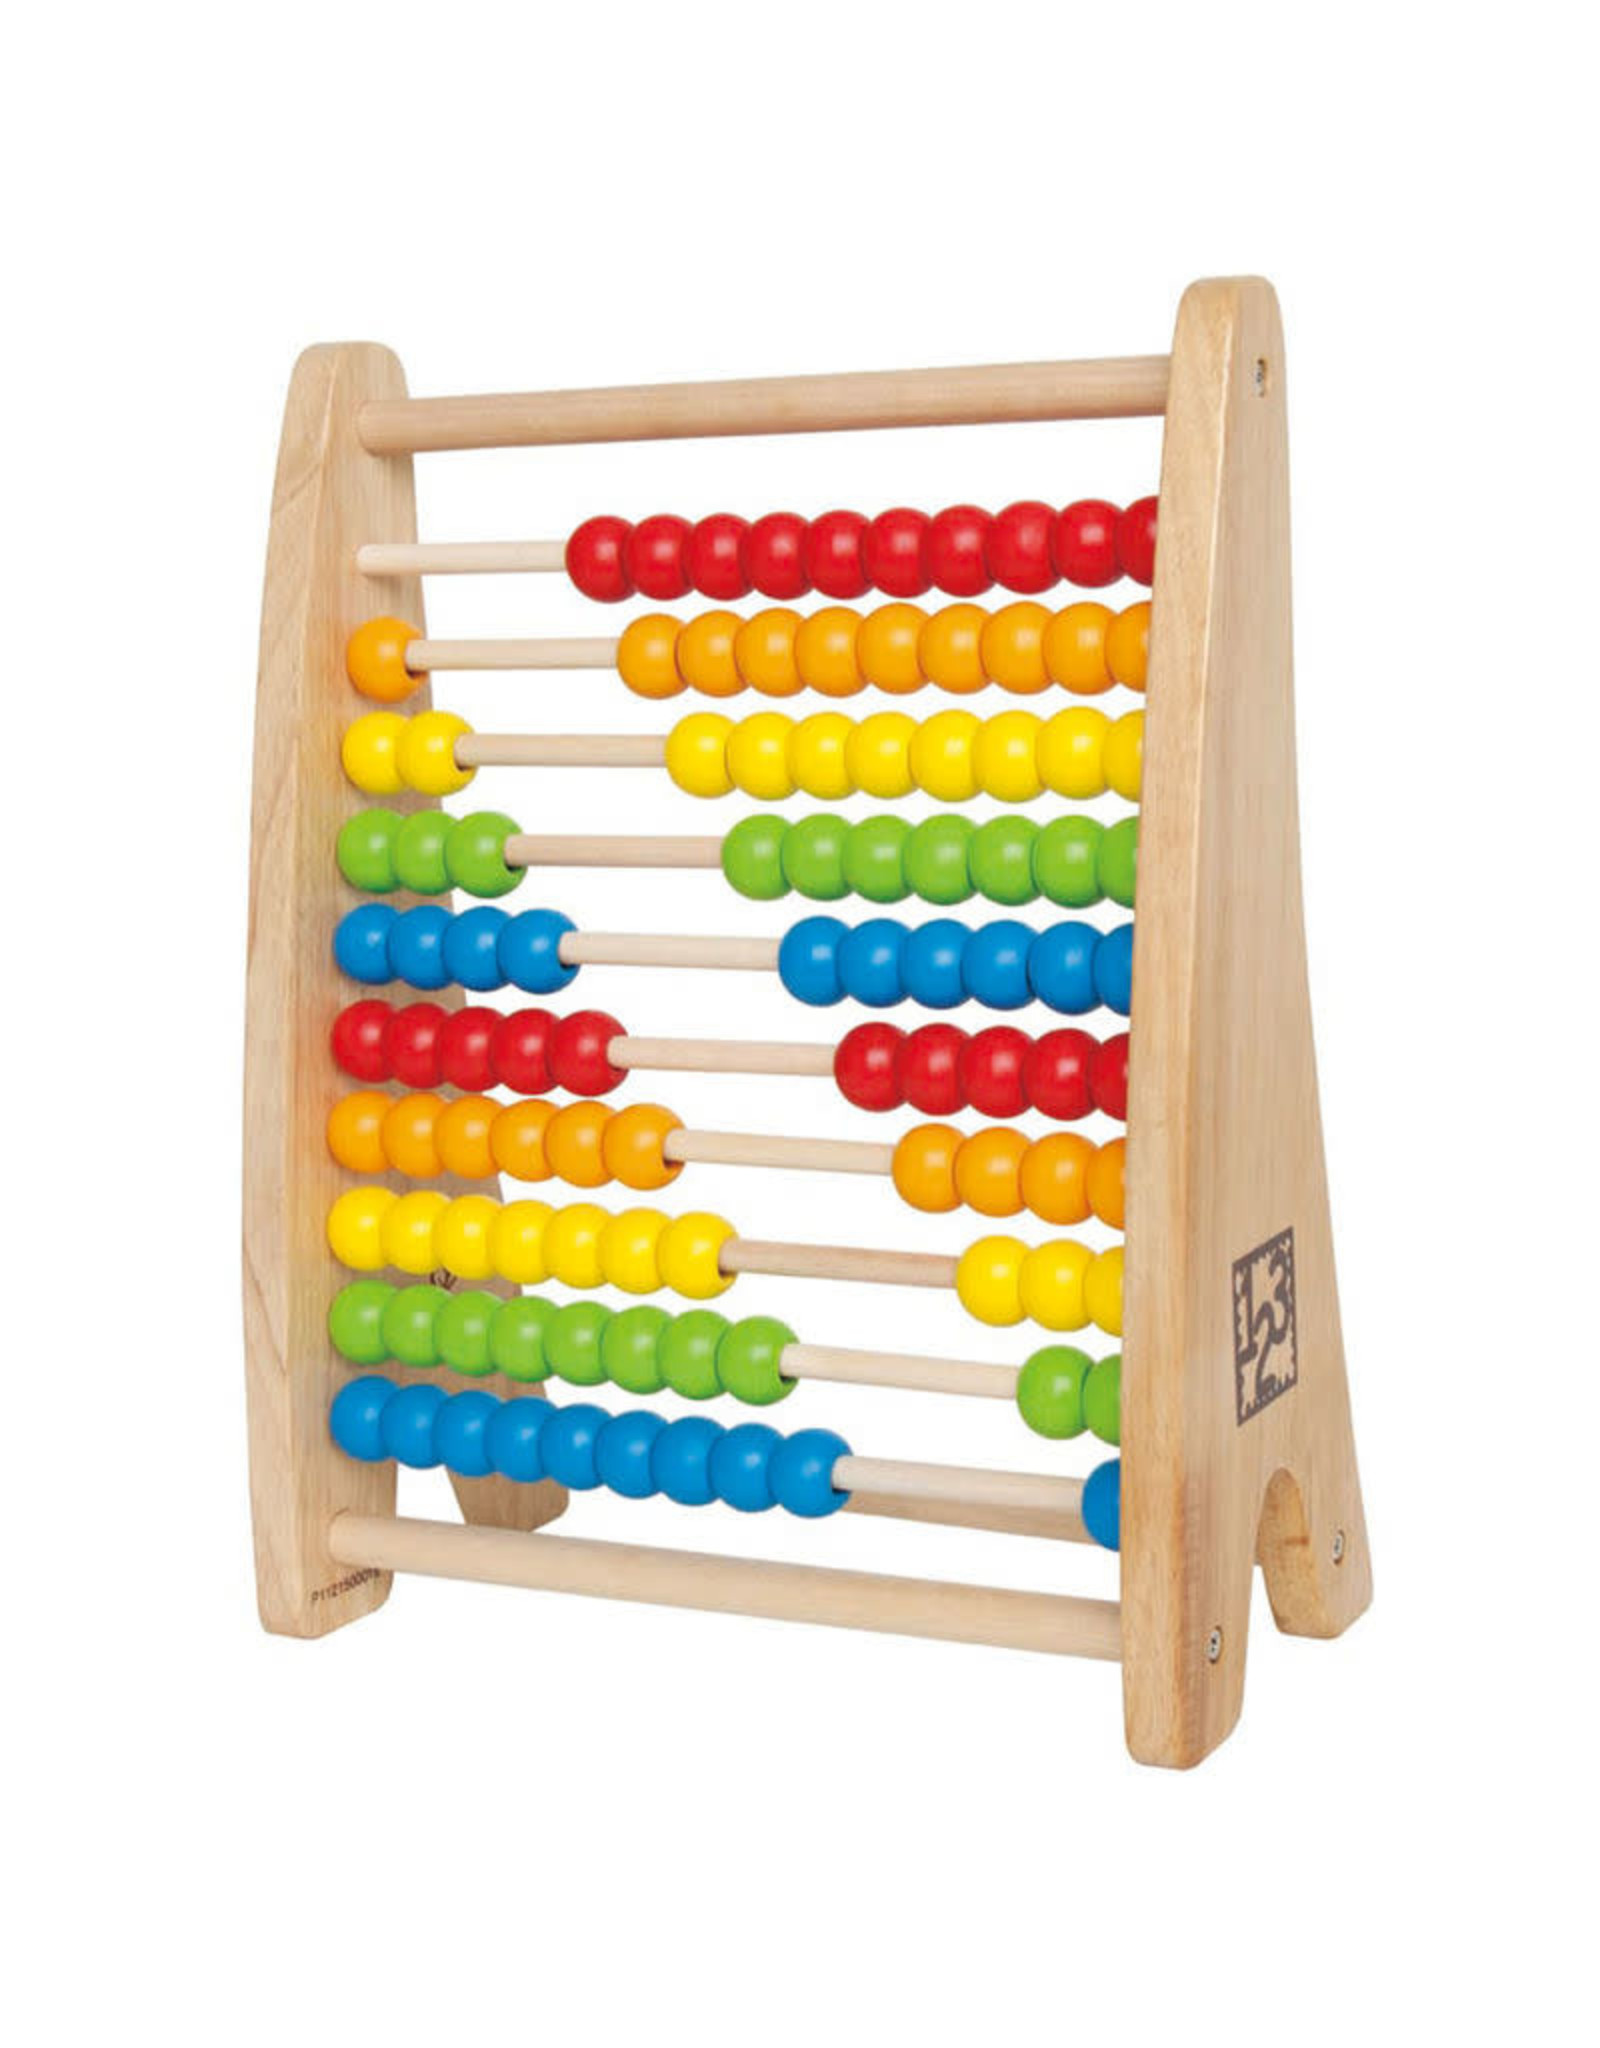 Hape Hape Rainbow Bead Abacus